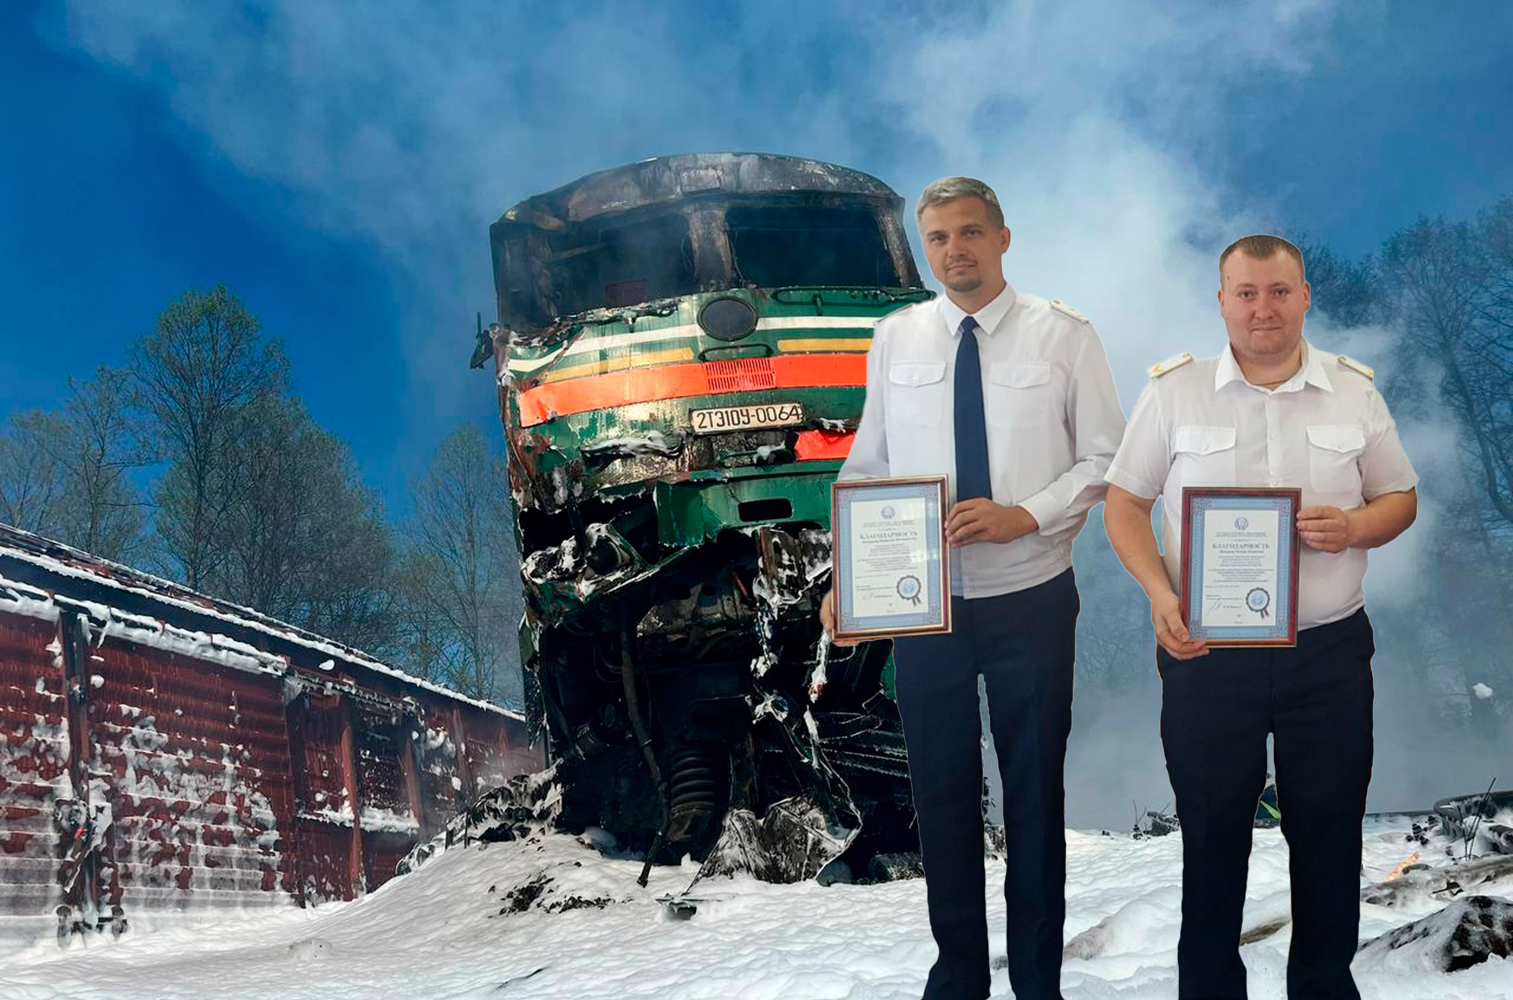 Сайт железнодорожника белоруссии. Награждение. Машинисты. Фотографии тепловозное локомотивное Миасское депо тепловозы.